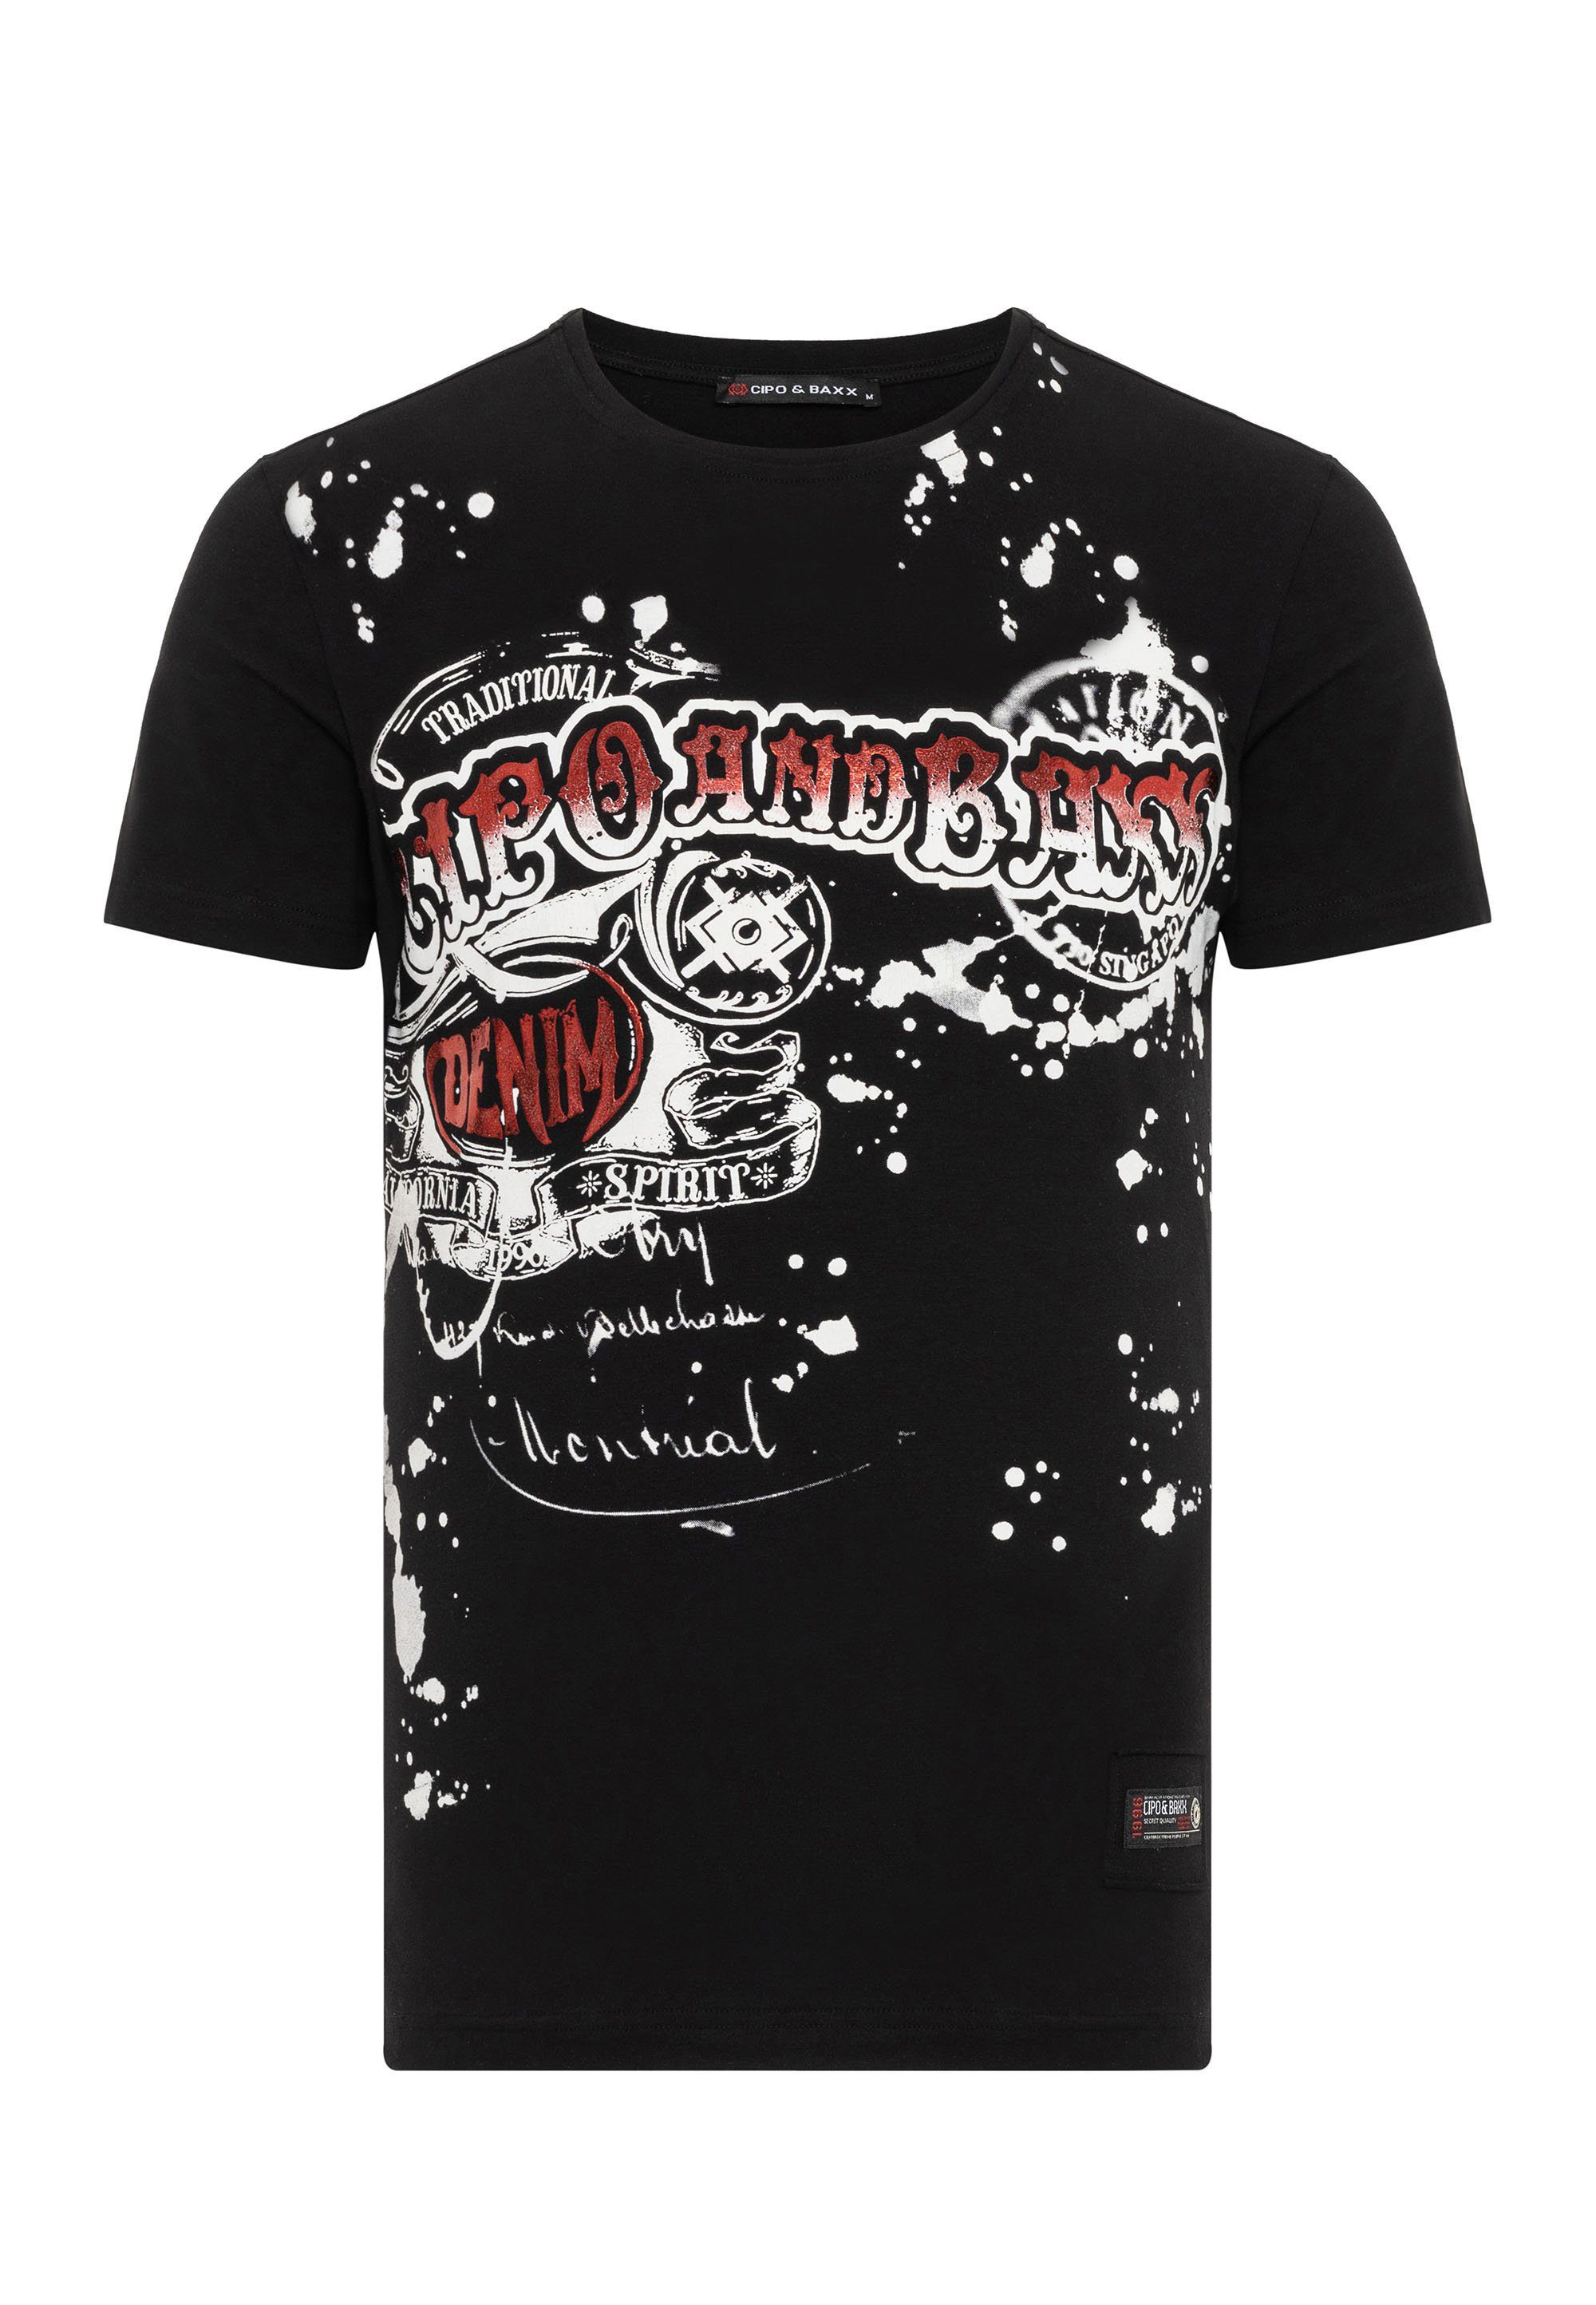 T-Shirt coolem Markenprint Baxx schwarz & Cipo mit